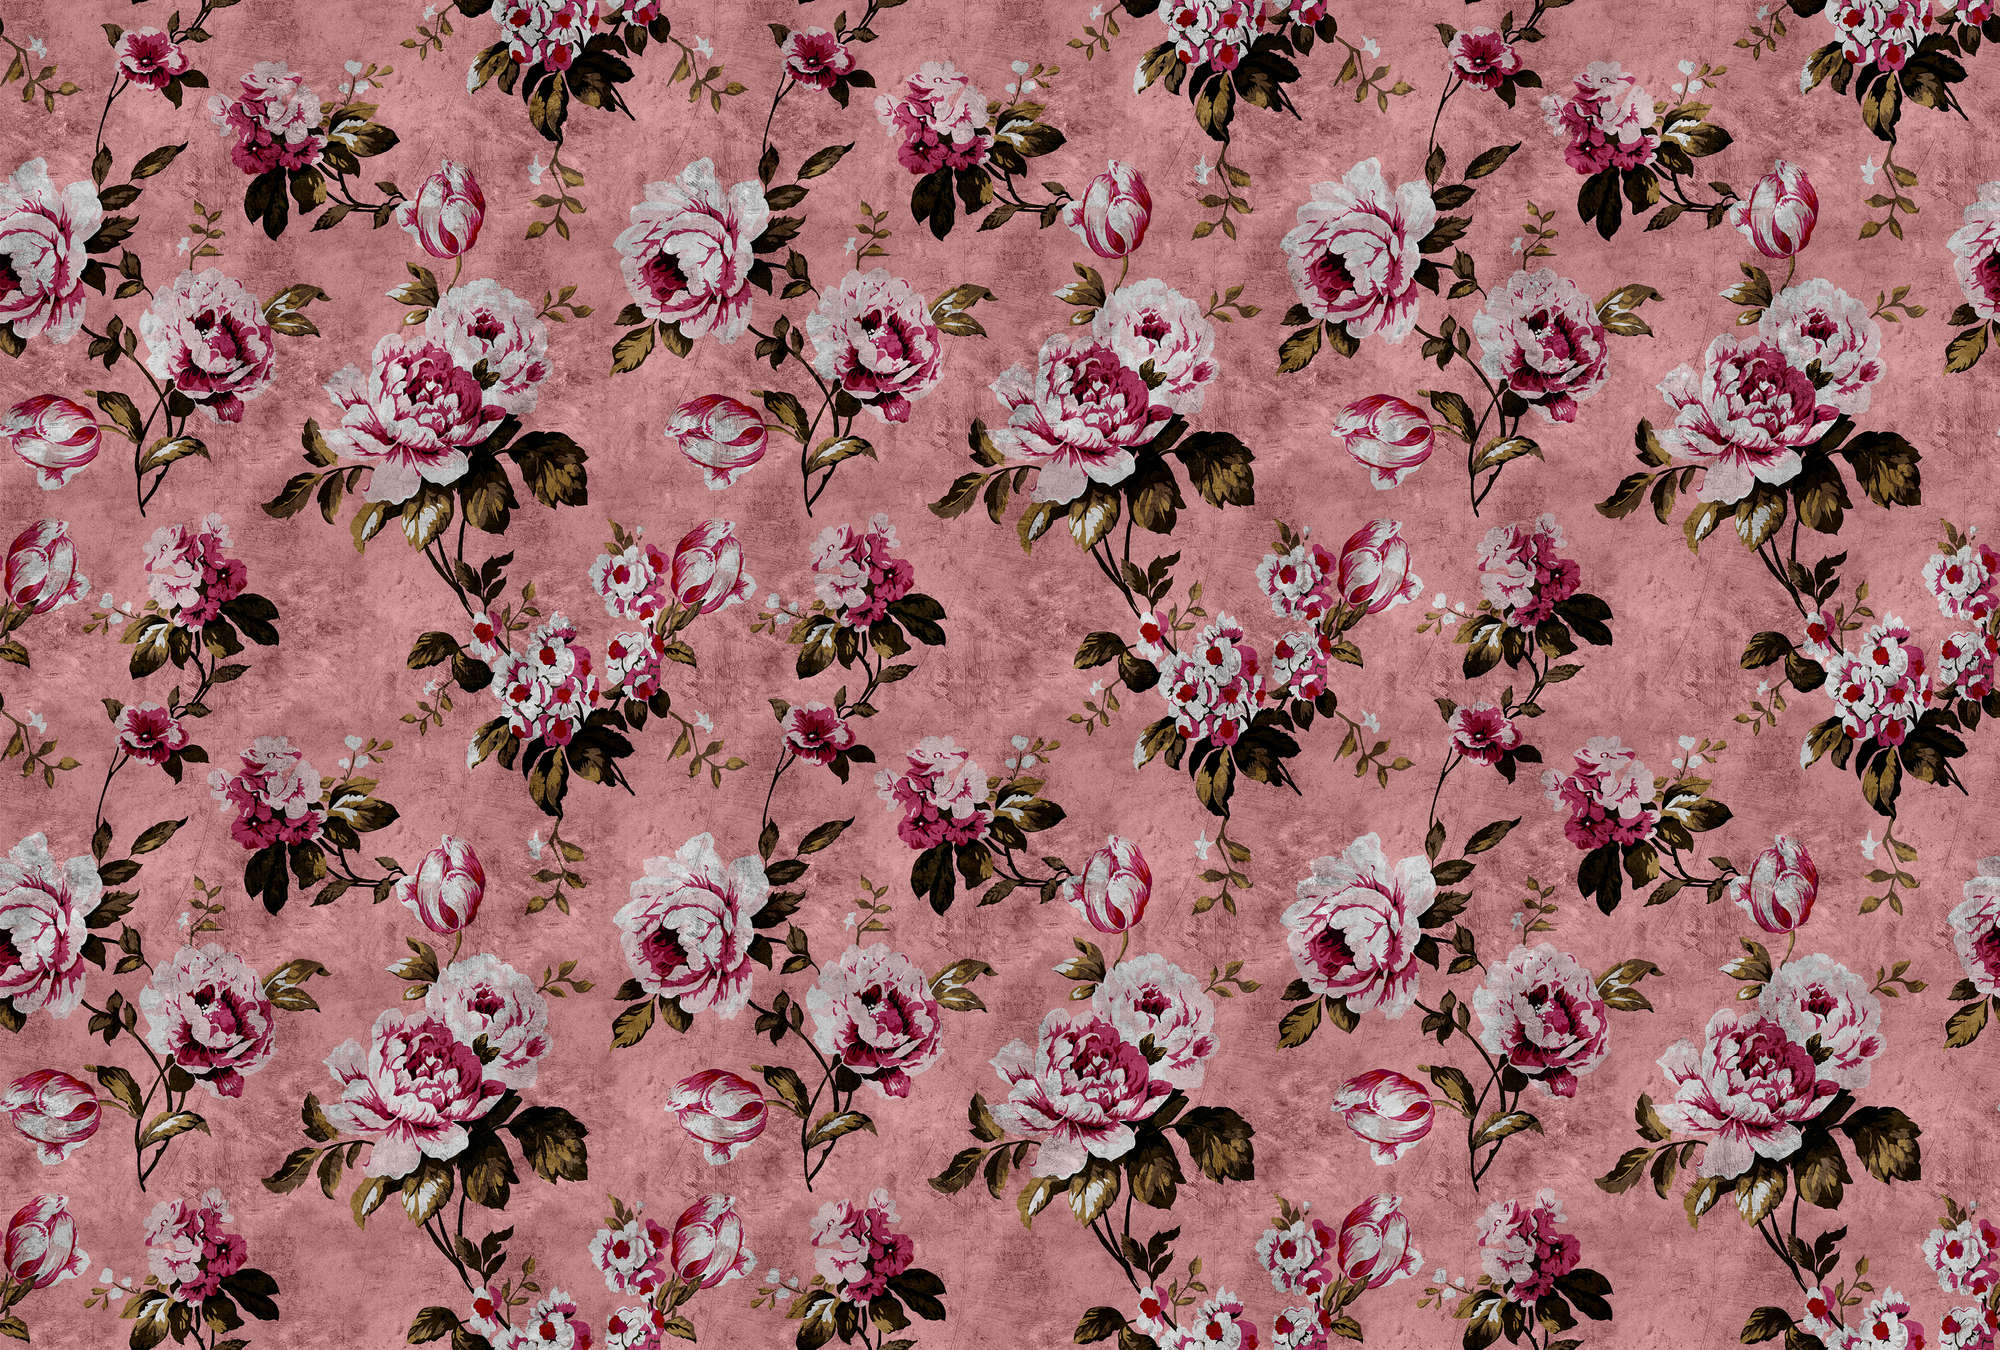             Wild roses 4 - Carta da parati con rose in stile retrò, rosa in struttura graffiata - Rosa, Rosso | Natura qualita consistenza Materiali non tessuto
        